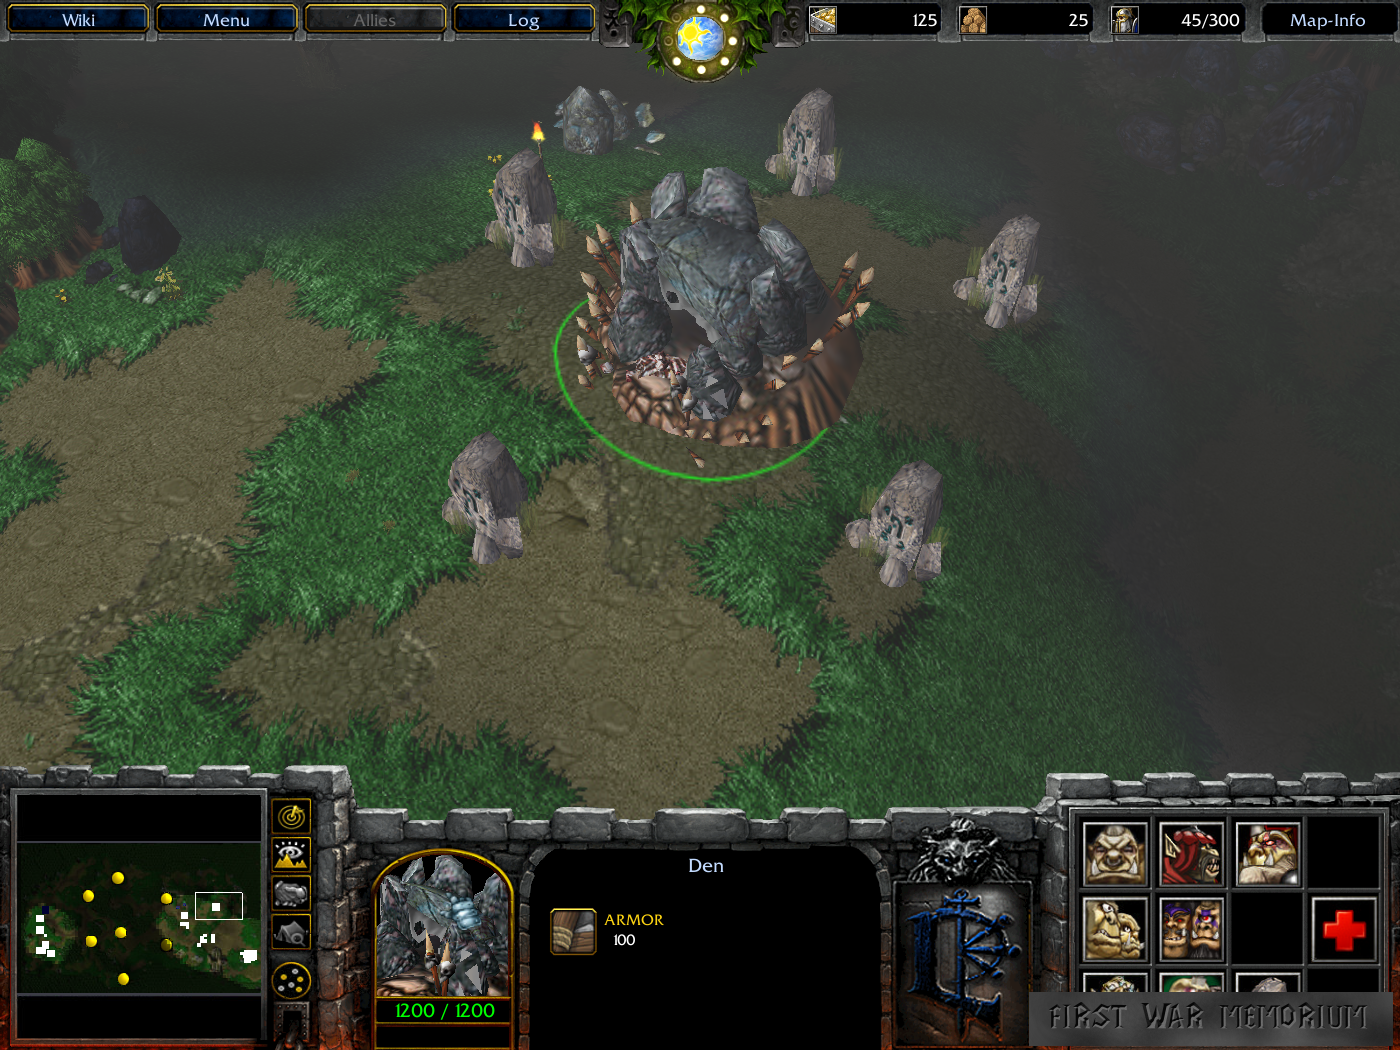 Ogre_Base_Rune_Stone_Circle_Start (First War Memorium WarCraft 3)